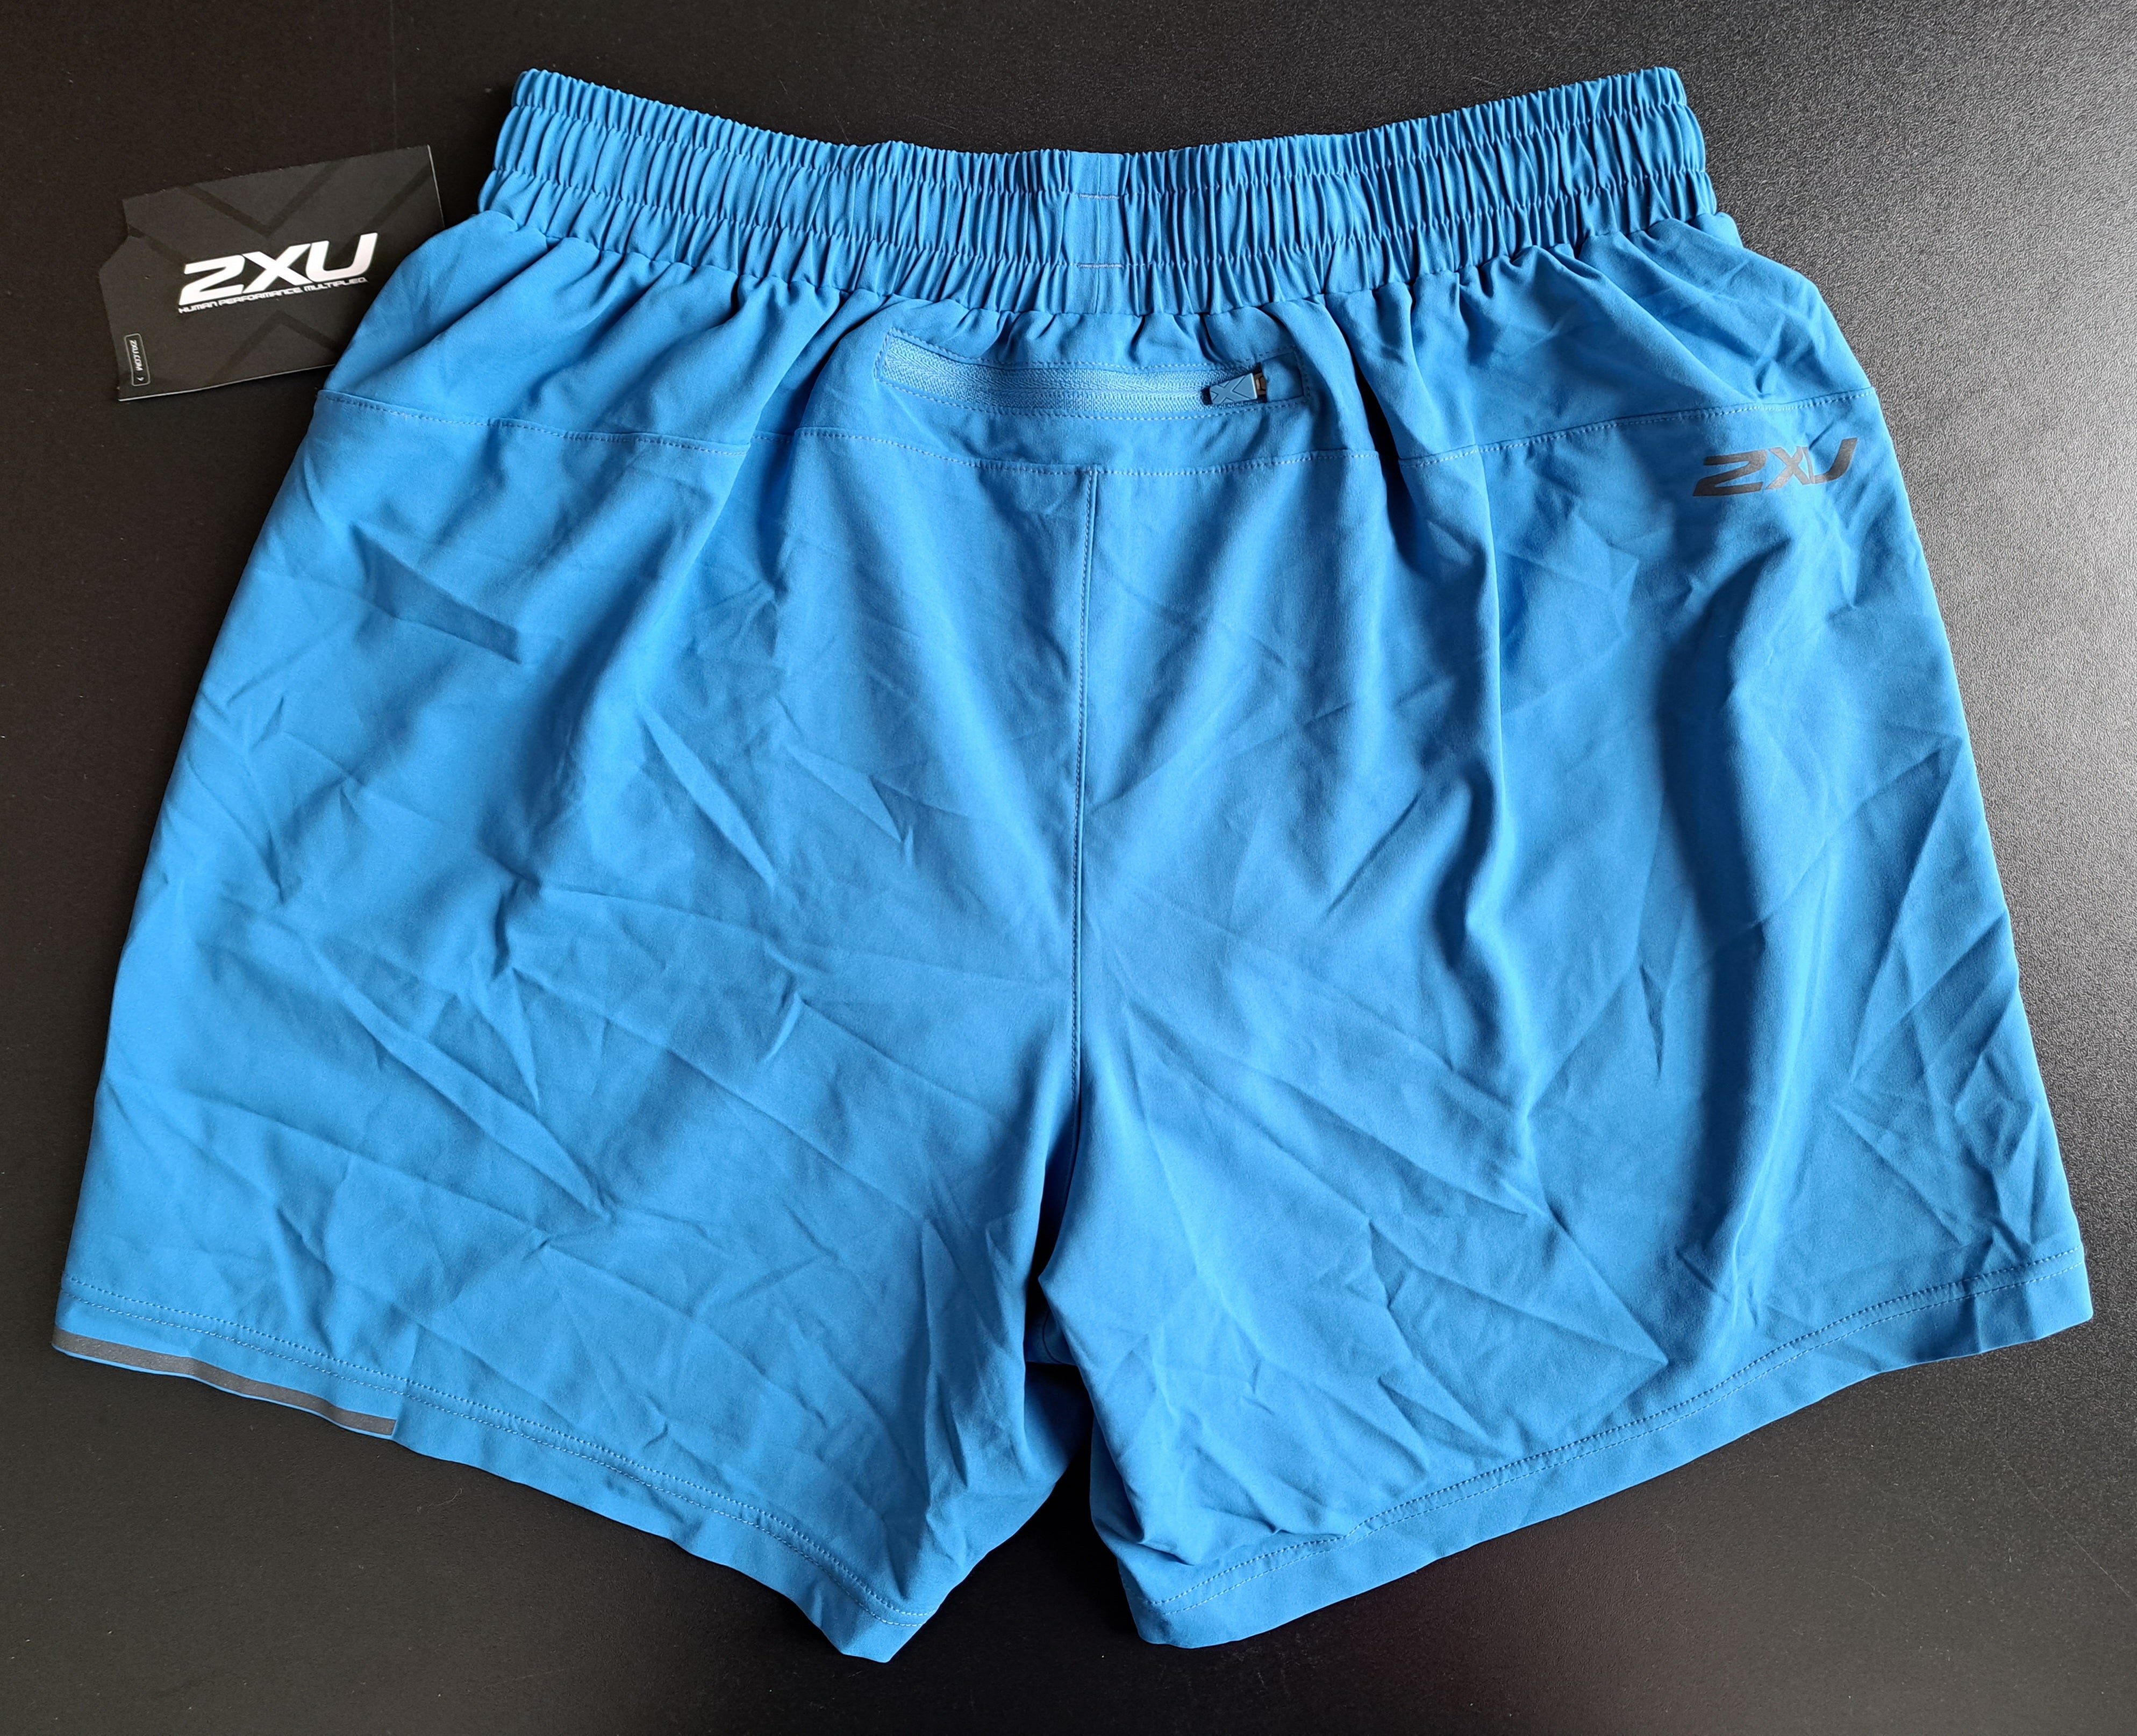 2XU Aero 5 Inch Shorts, Laufshort, Herren, blau